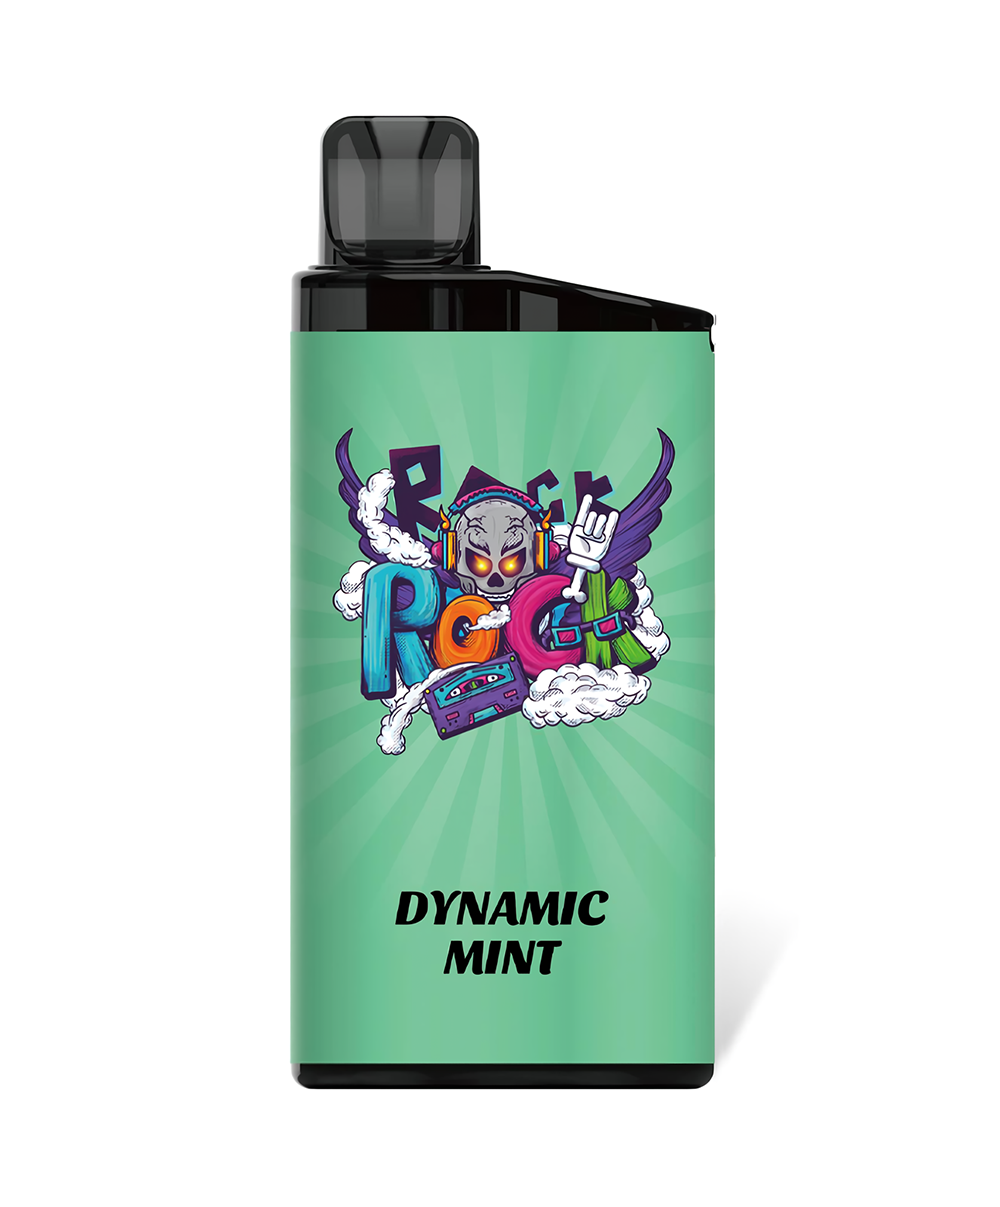 Dynamic mint